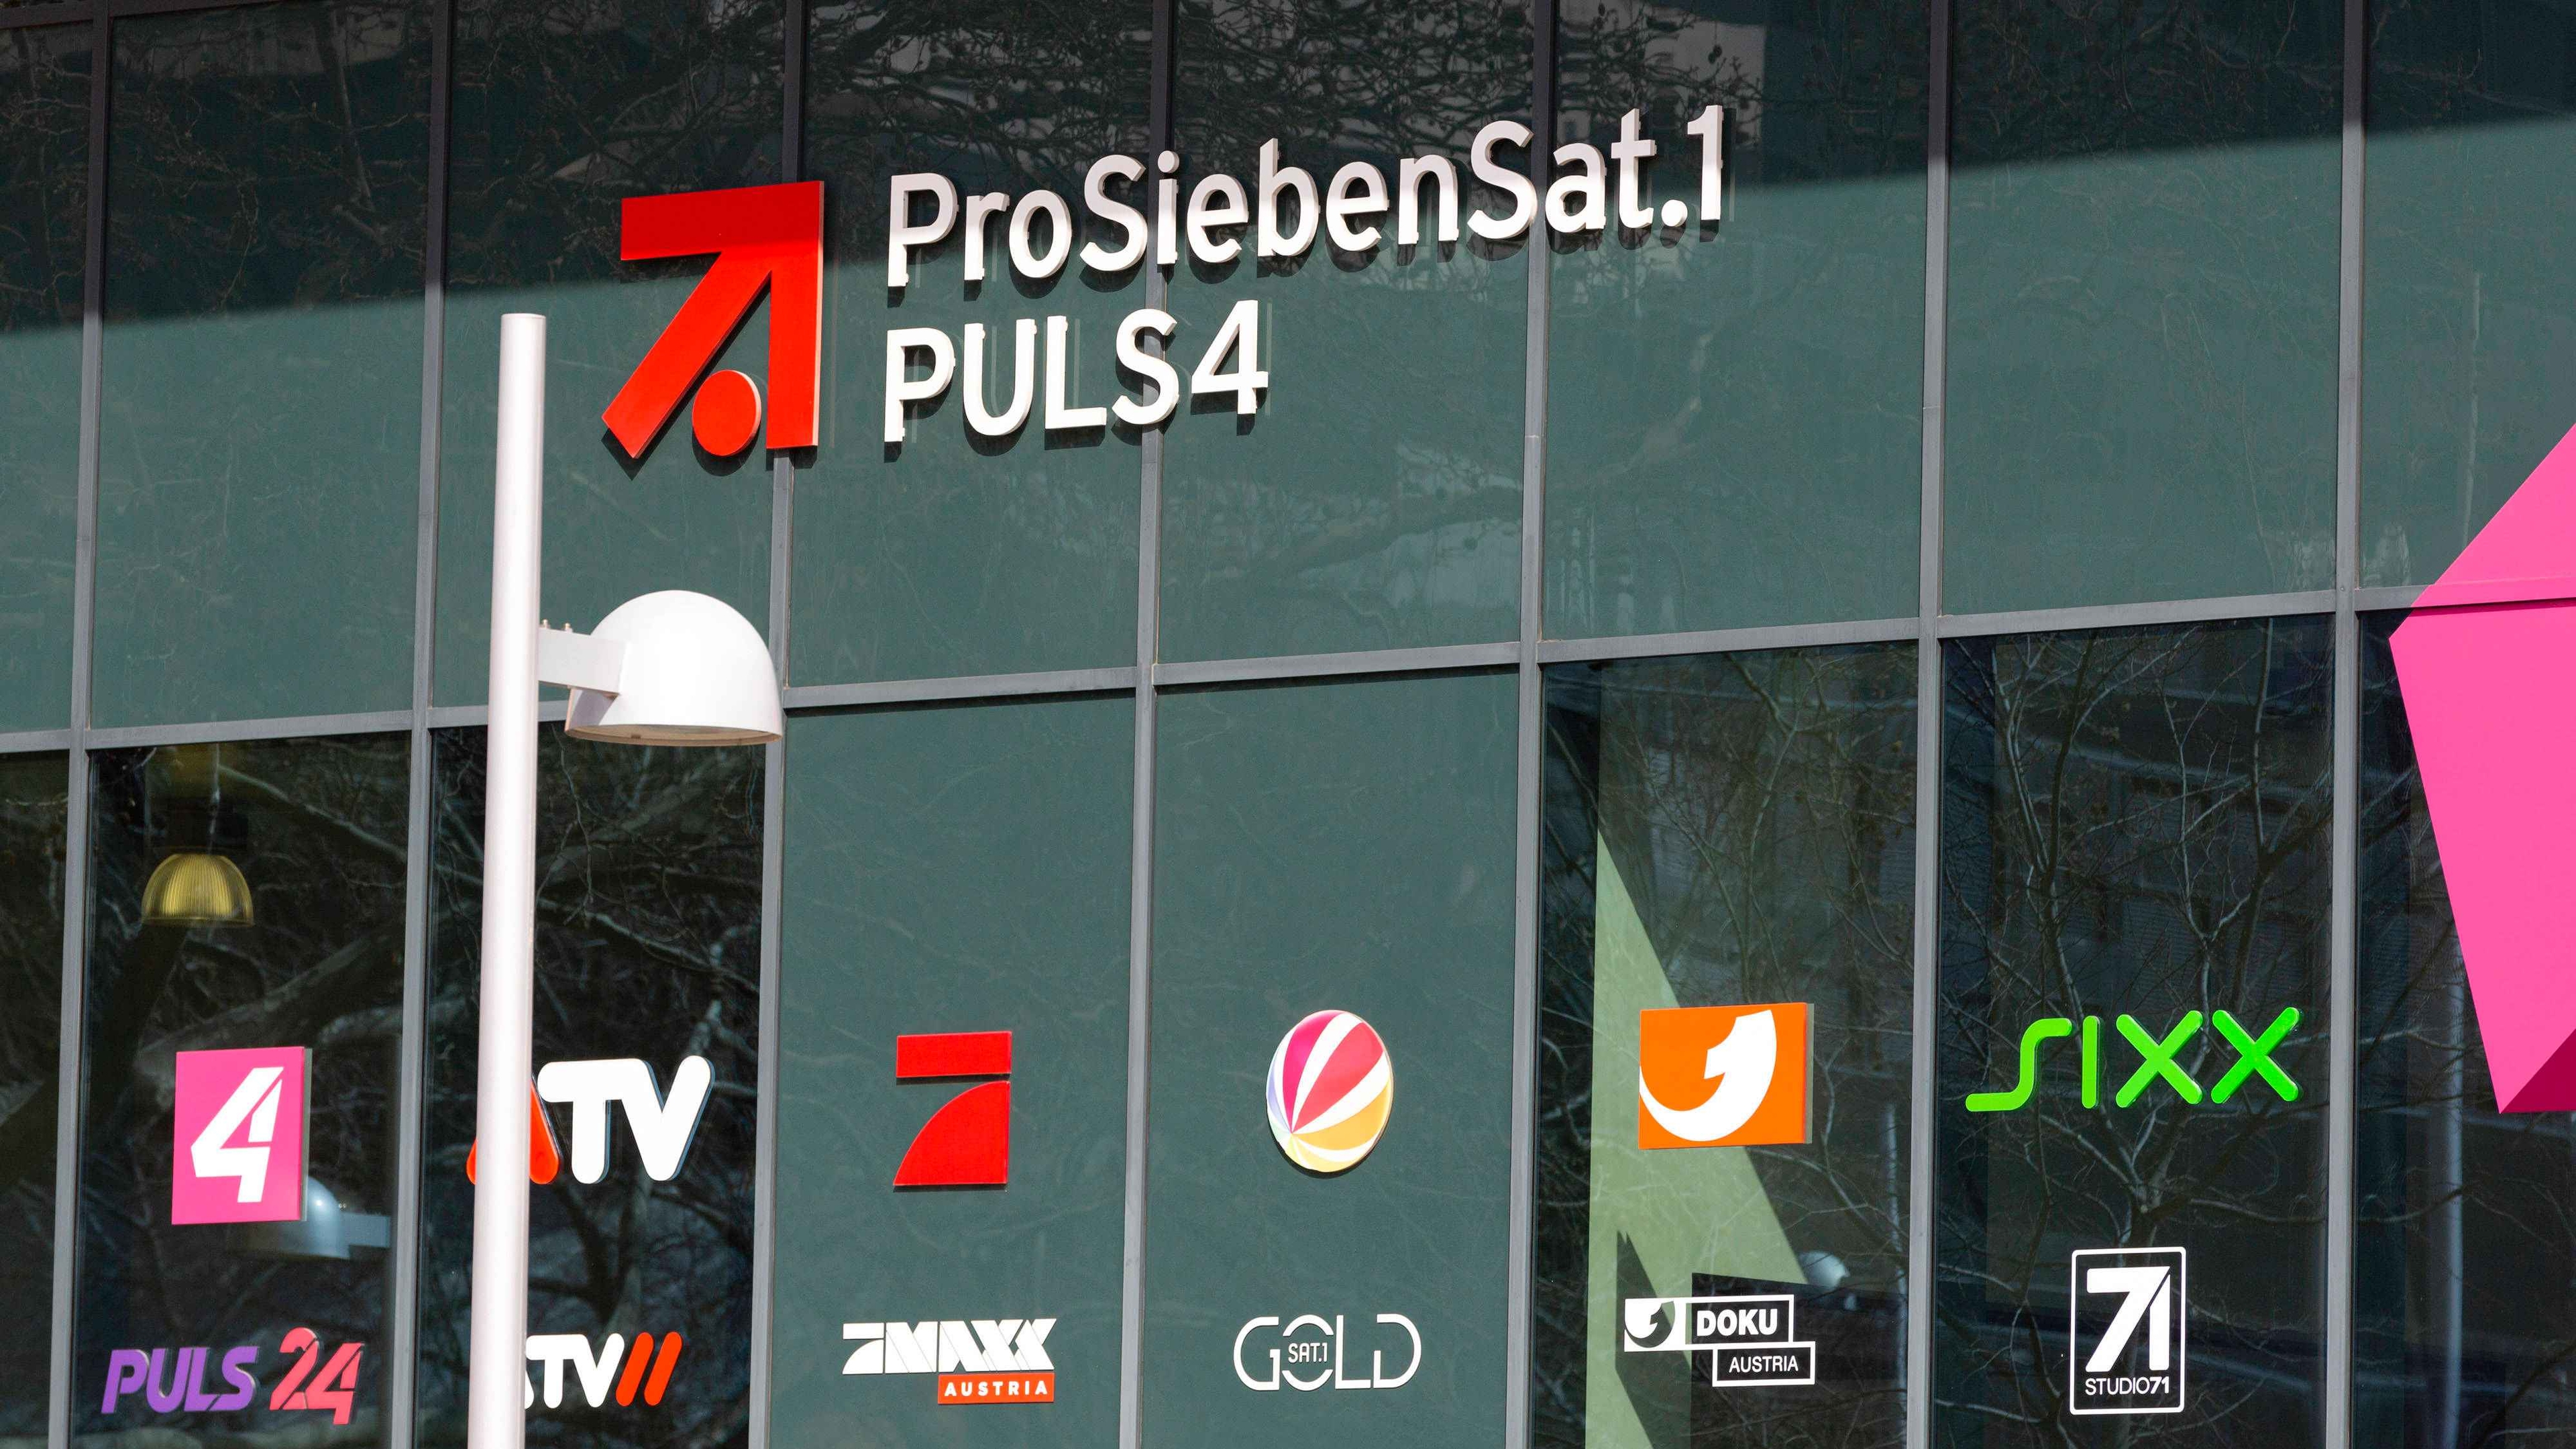 Medienregulierer haben „keine Bedenken“ gegen Anteilserhöhung von Media for Europe bei P7S1 